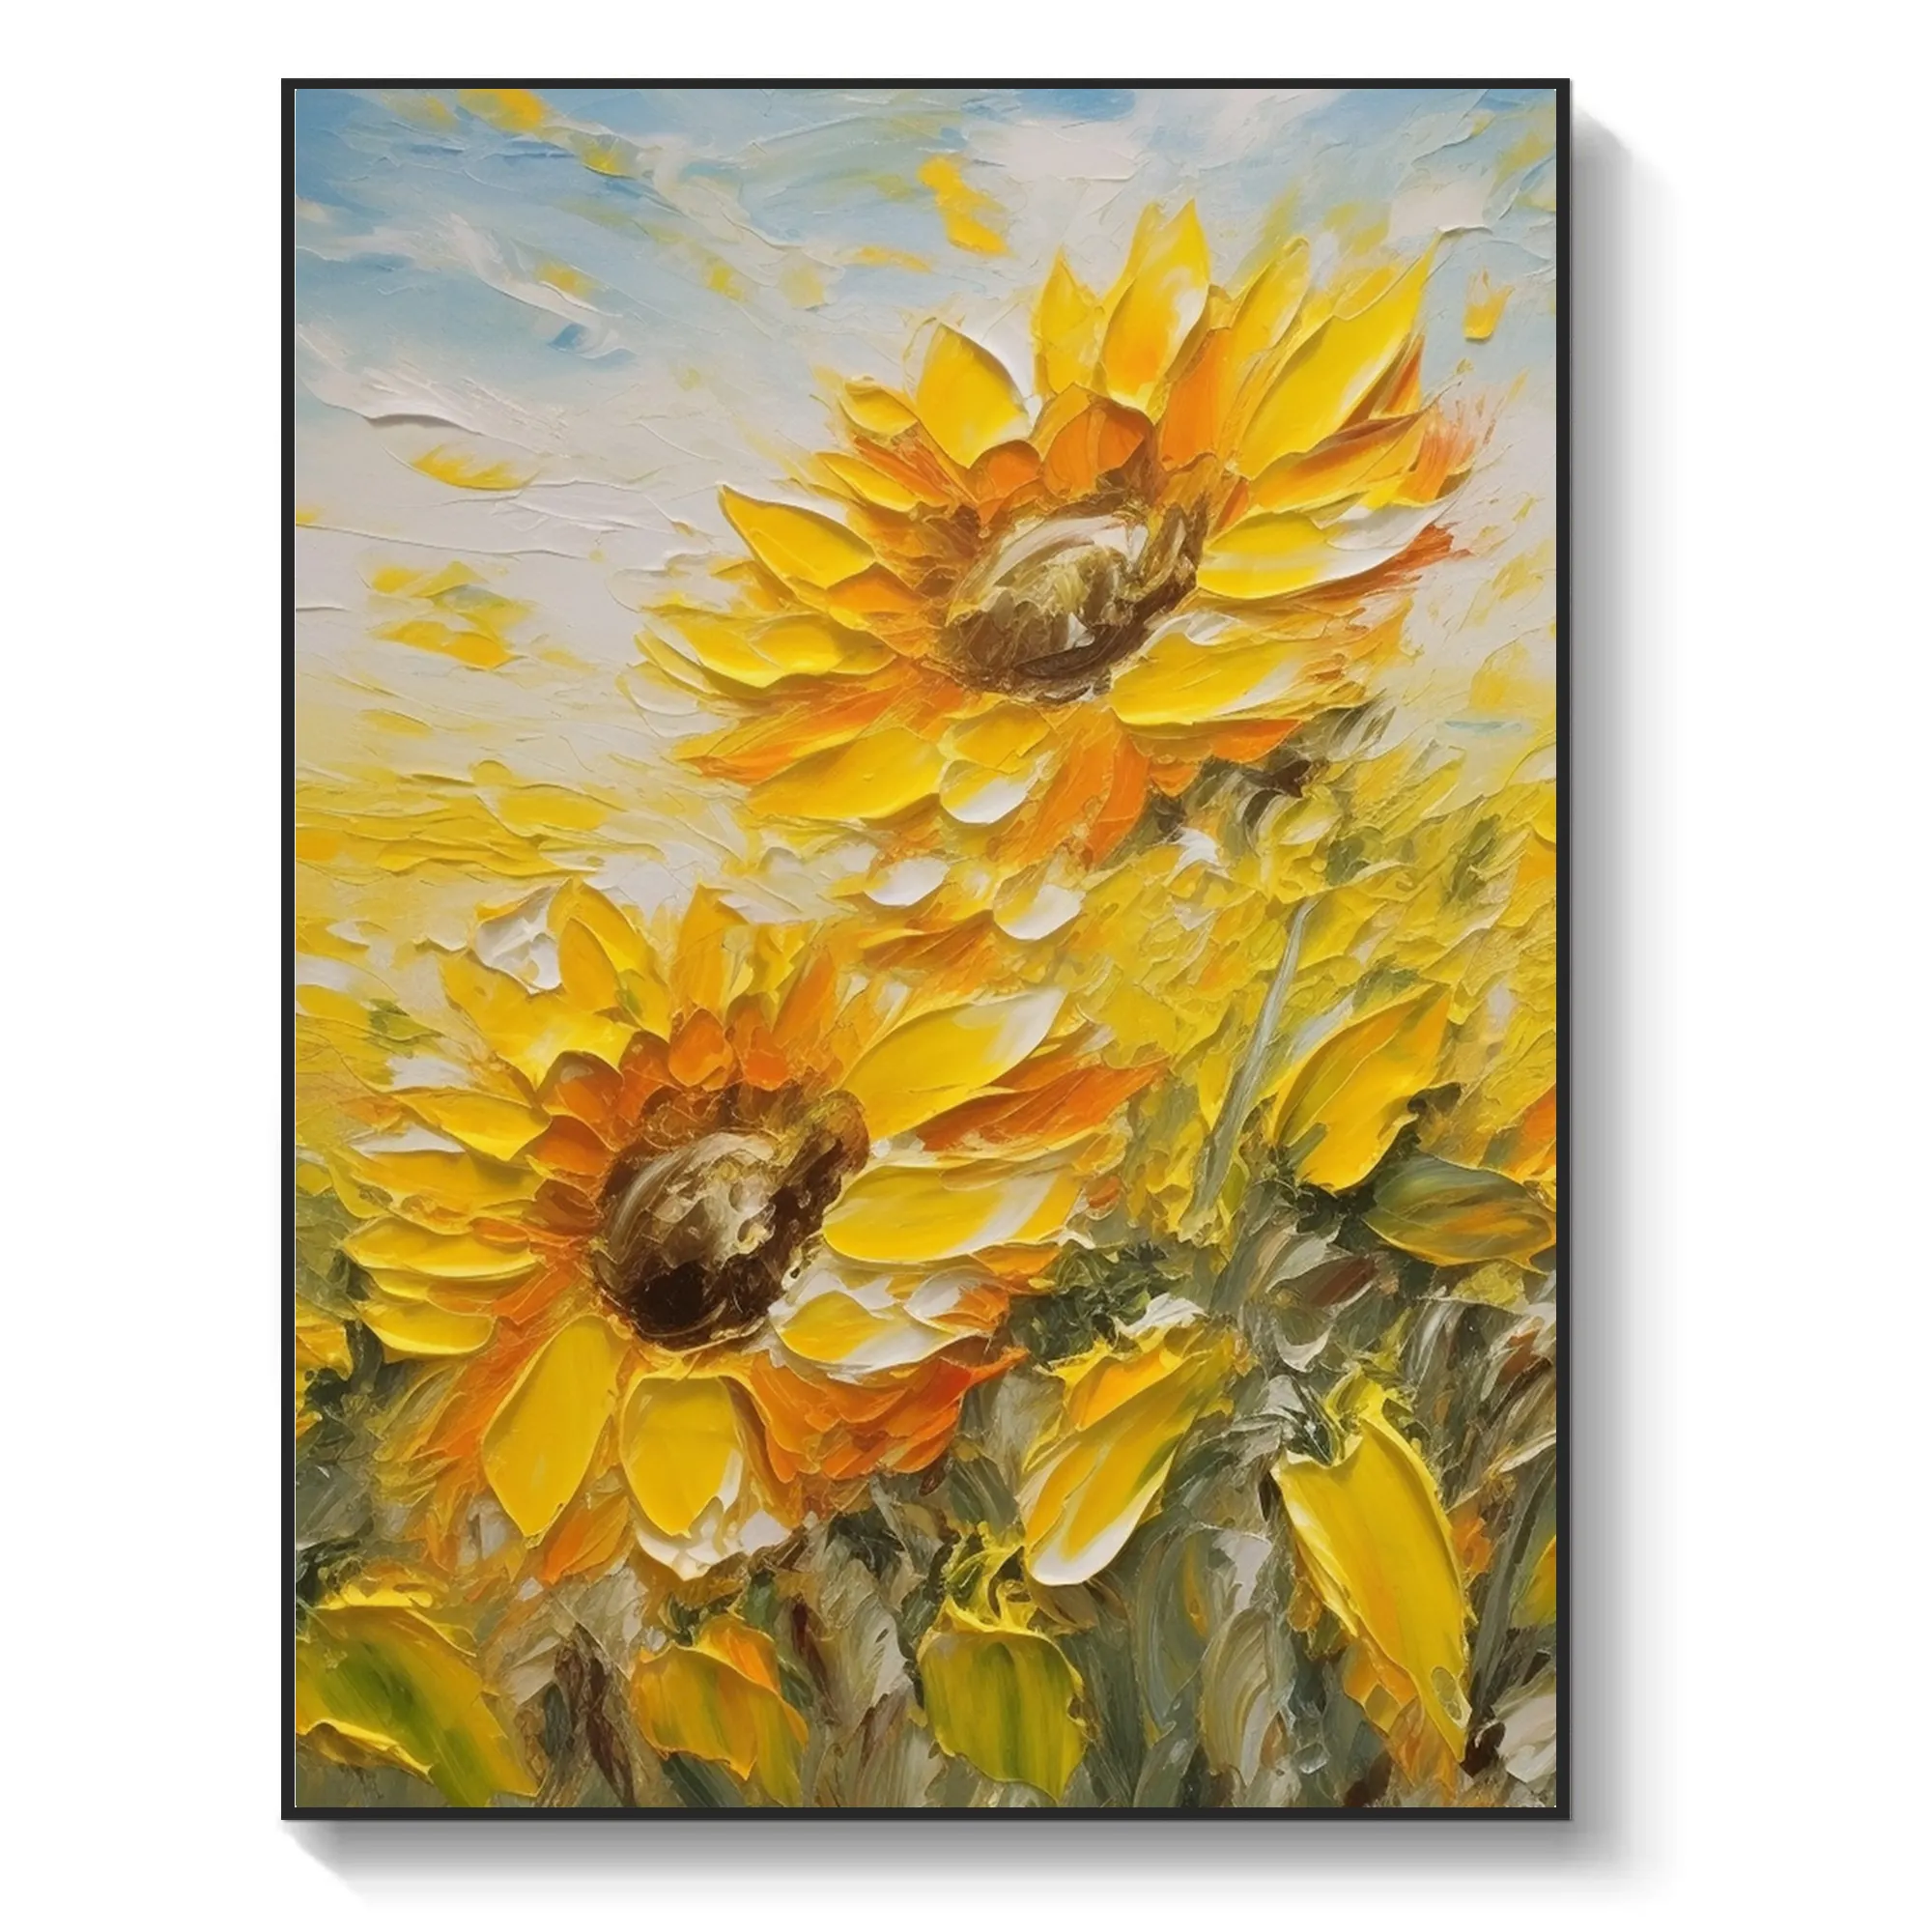 Pinturas al óleo abstractas de girasoles impresionistas, decoración moderna, pintura al óleo de flores, pinturas al óleo famosas de girasol de gran tamaño